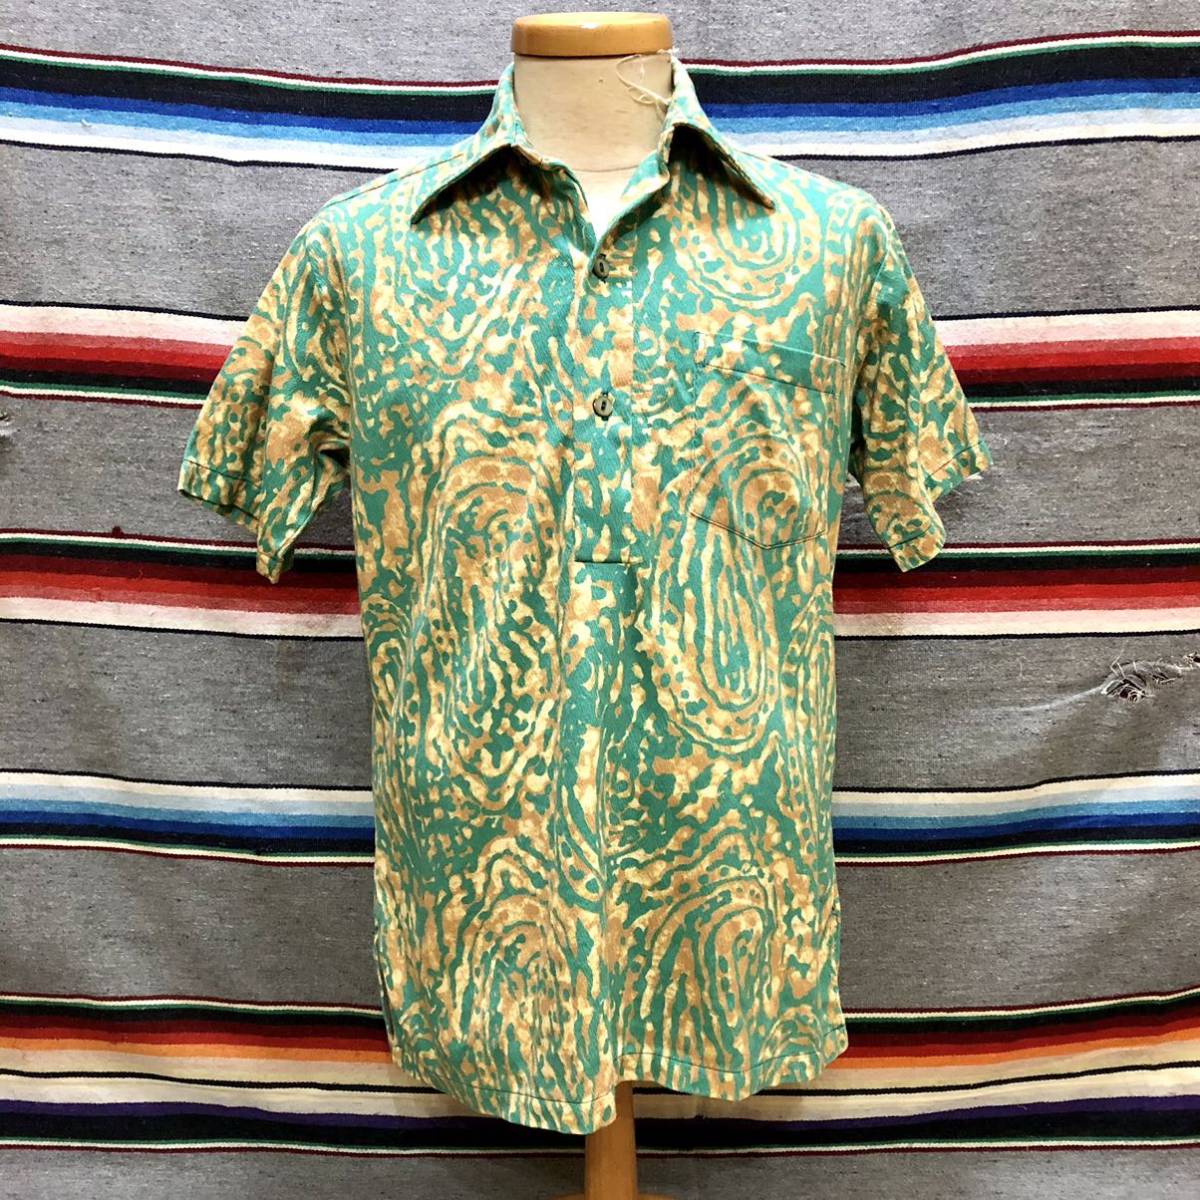 70’s Aliikoa プルオーバー Hawaiian Shirt 検索:古着 ビンテージ HAWAII アロハシャツ ハワイ コットン 70年代_画像2